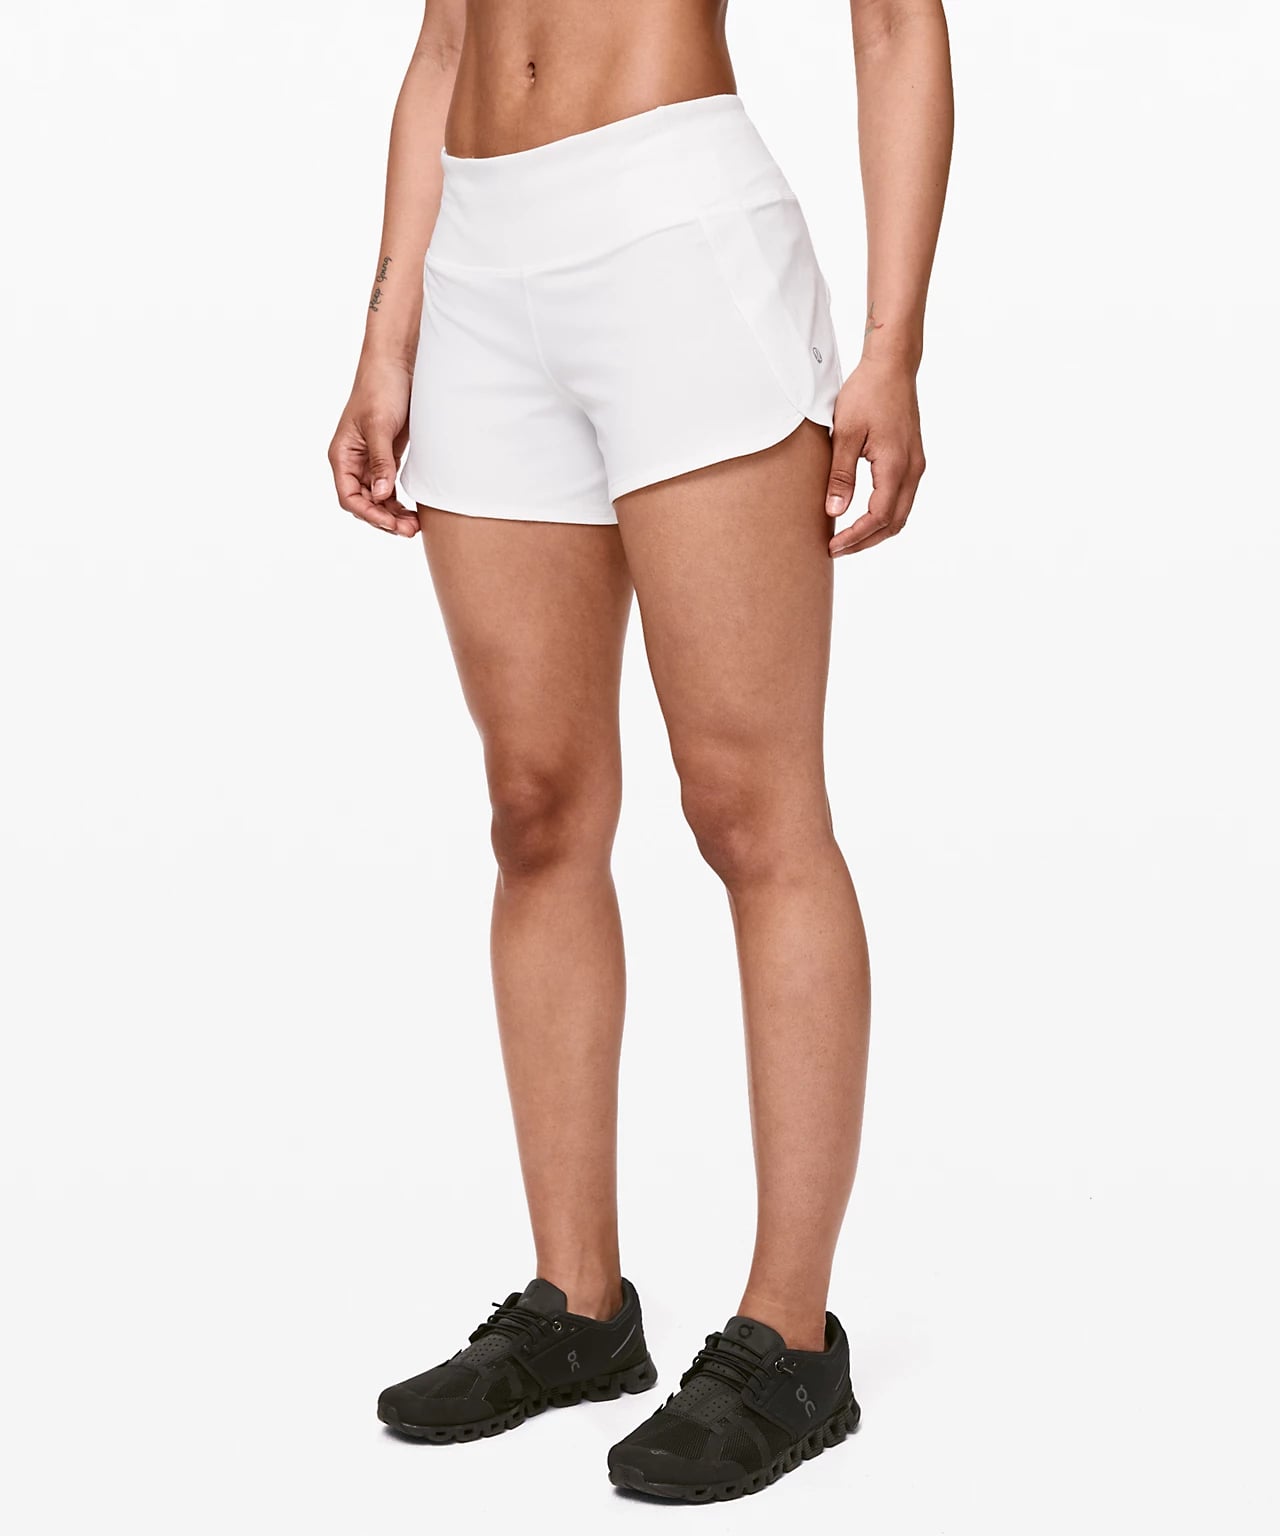 lululemon type shorts